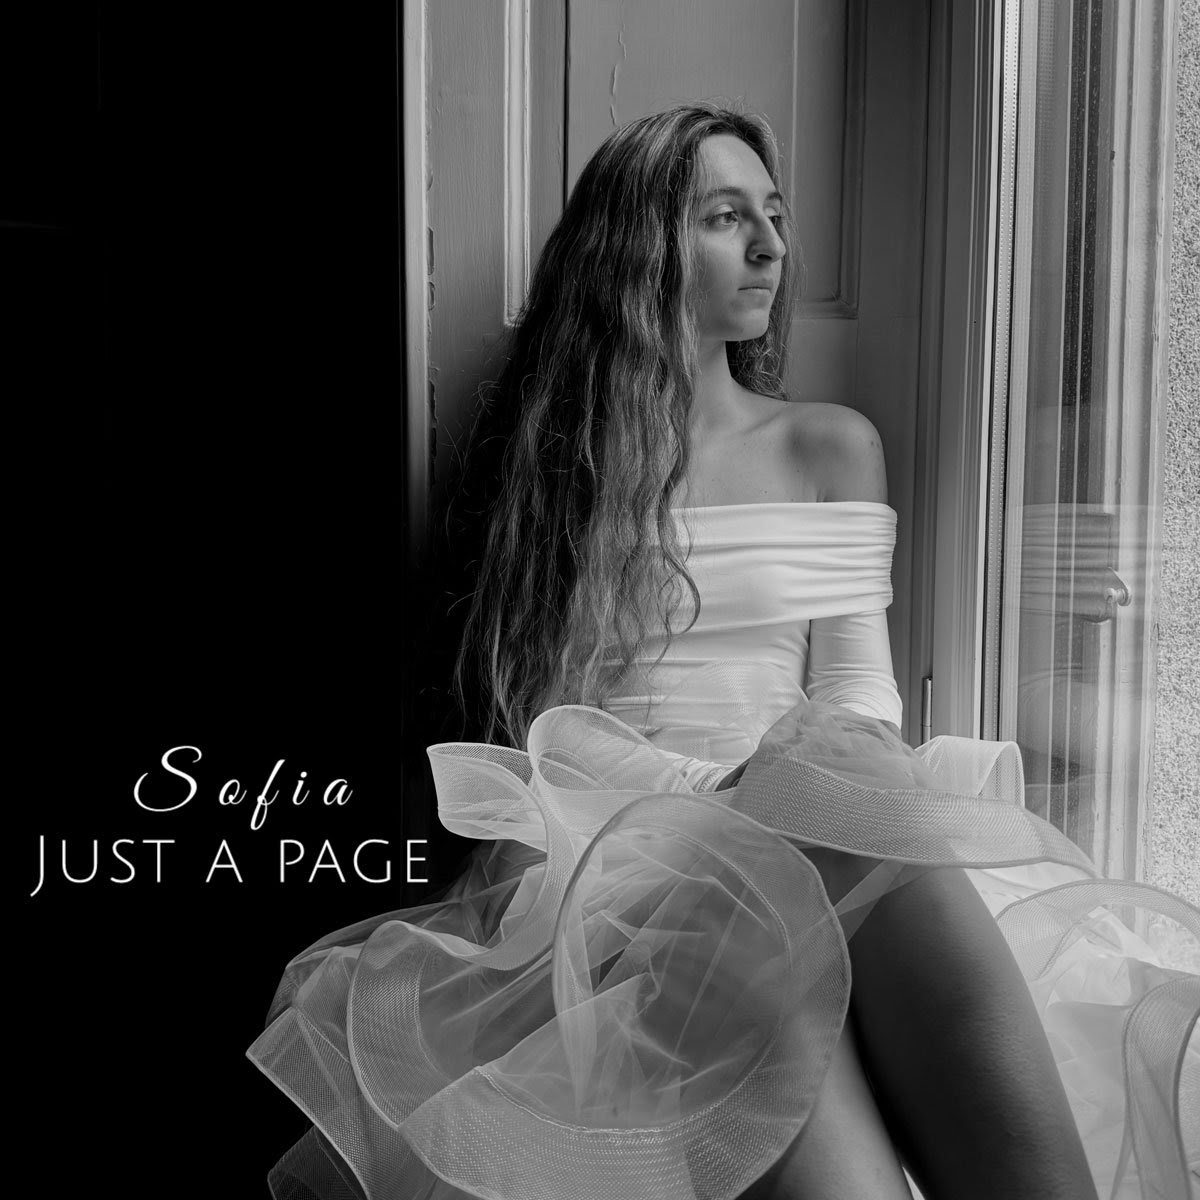 SOFIA: dal 3 maggio sui digital store e in radio “JUST A PAGE” il nuovo singolo